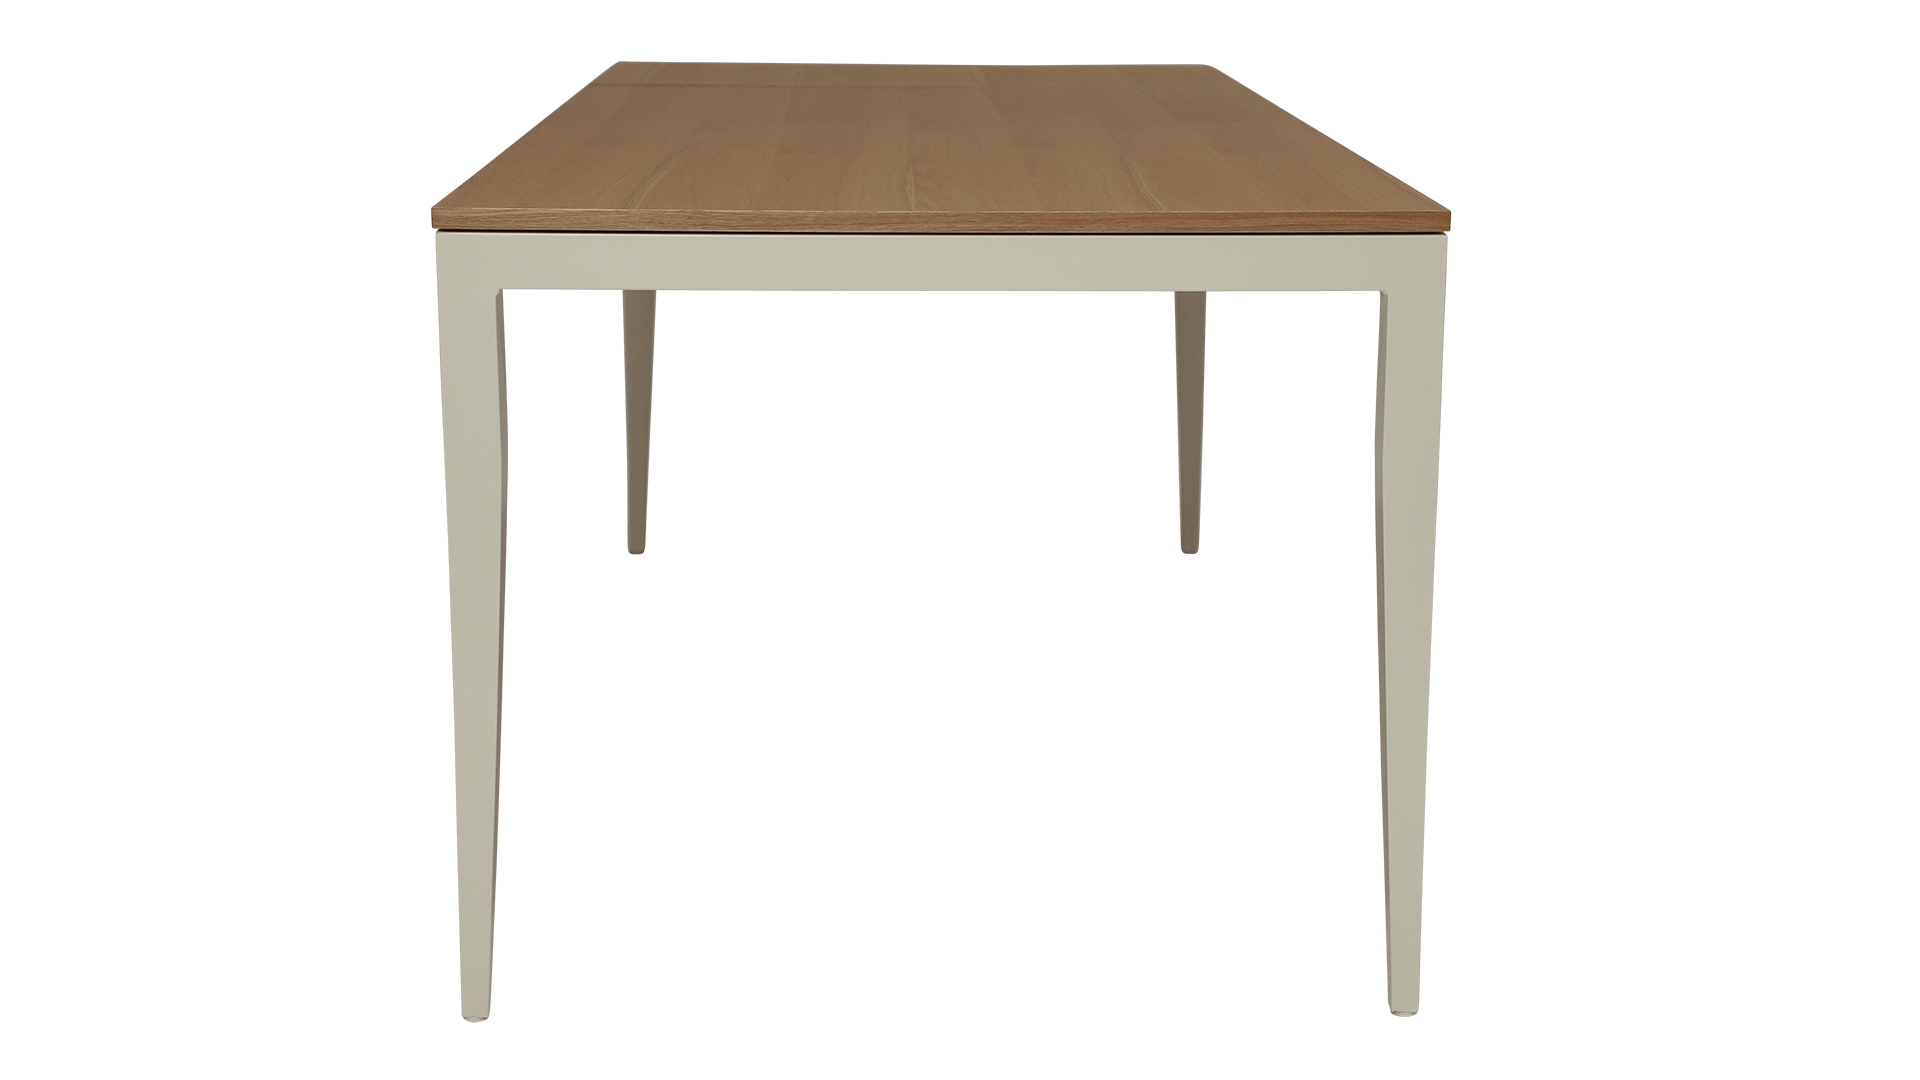 Der schoene Esstisch Jupiter von der Marke Jan Kurtz ist ausziehbar. Der Tisch besitzt ein weißes Metall Gestell mit einer Tischplatte in Eichenholz Optik.